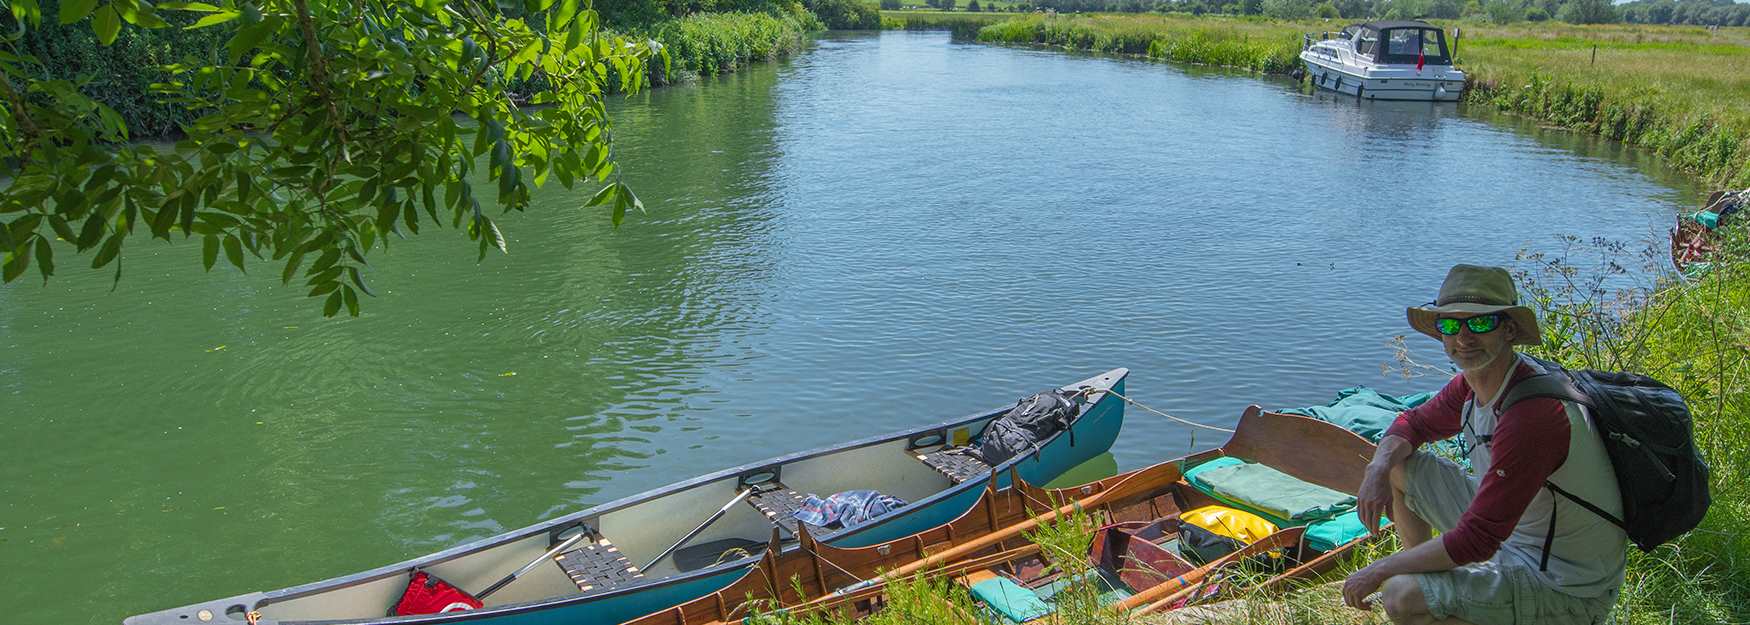 Canoes on the River Thames near Kelmscott